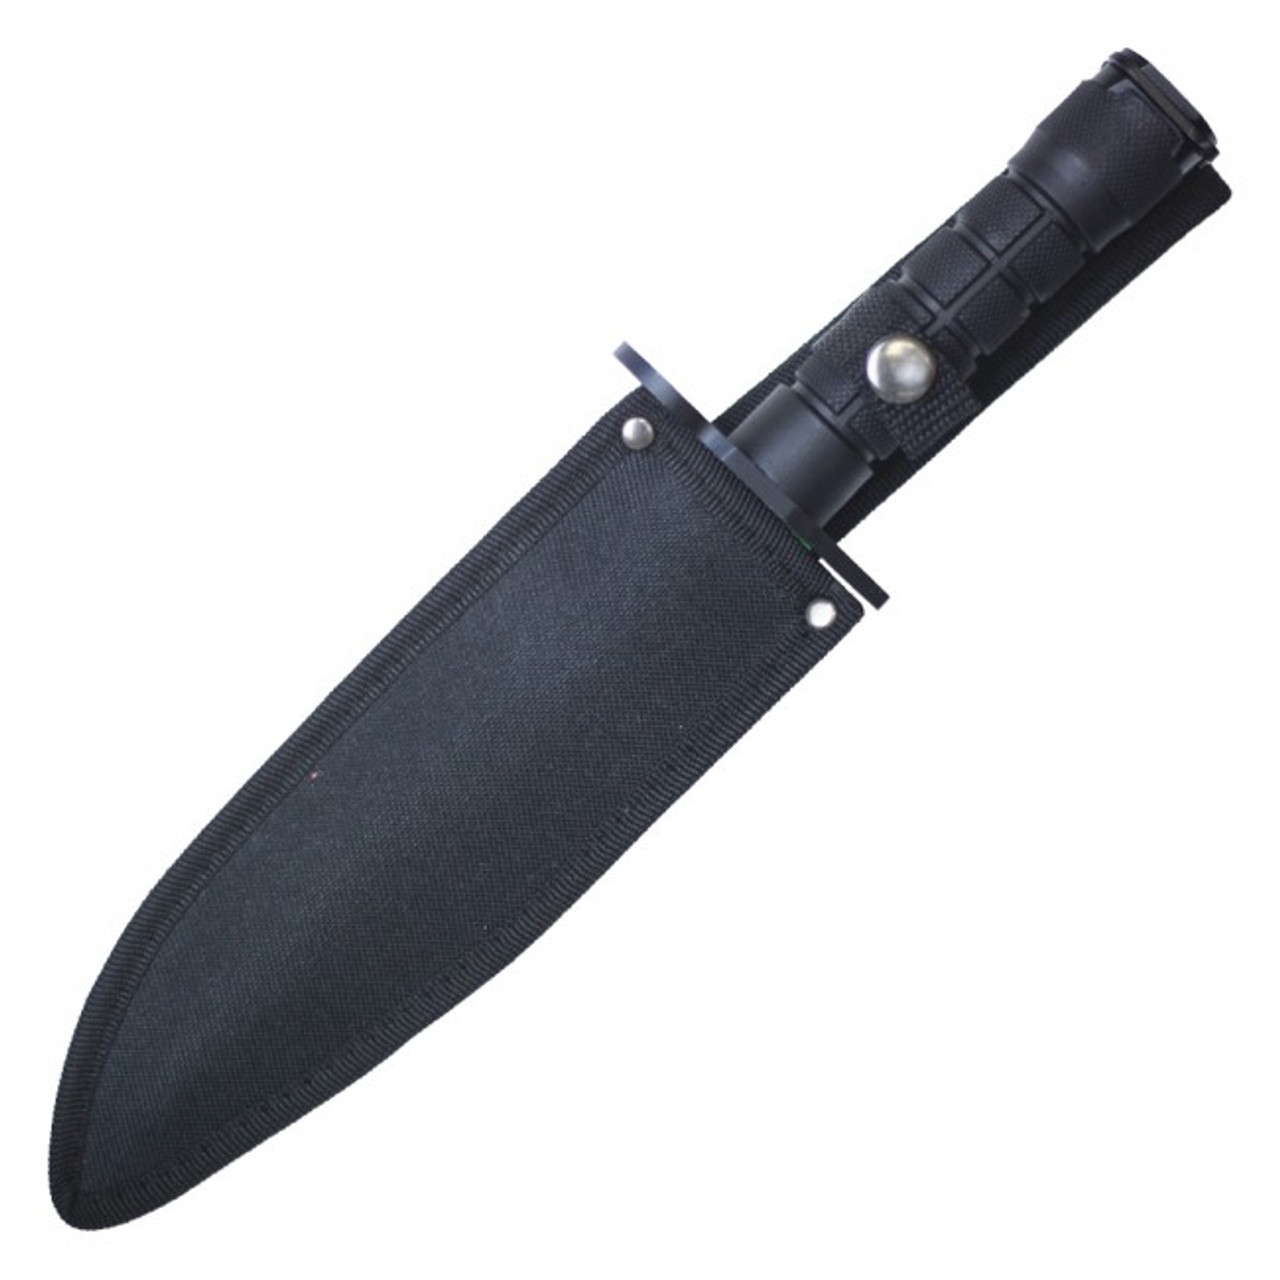 12.75" M9 Bayonet Knife - Black